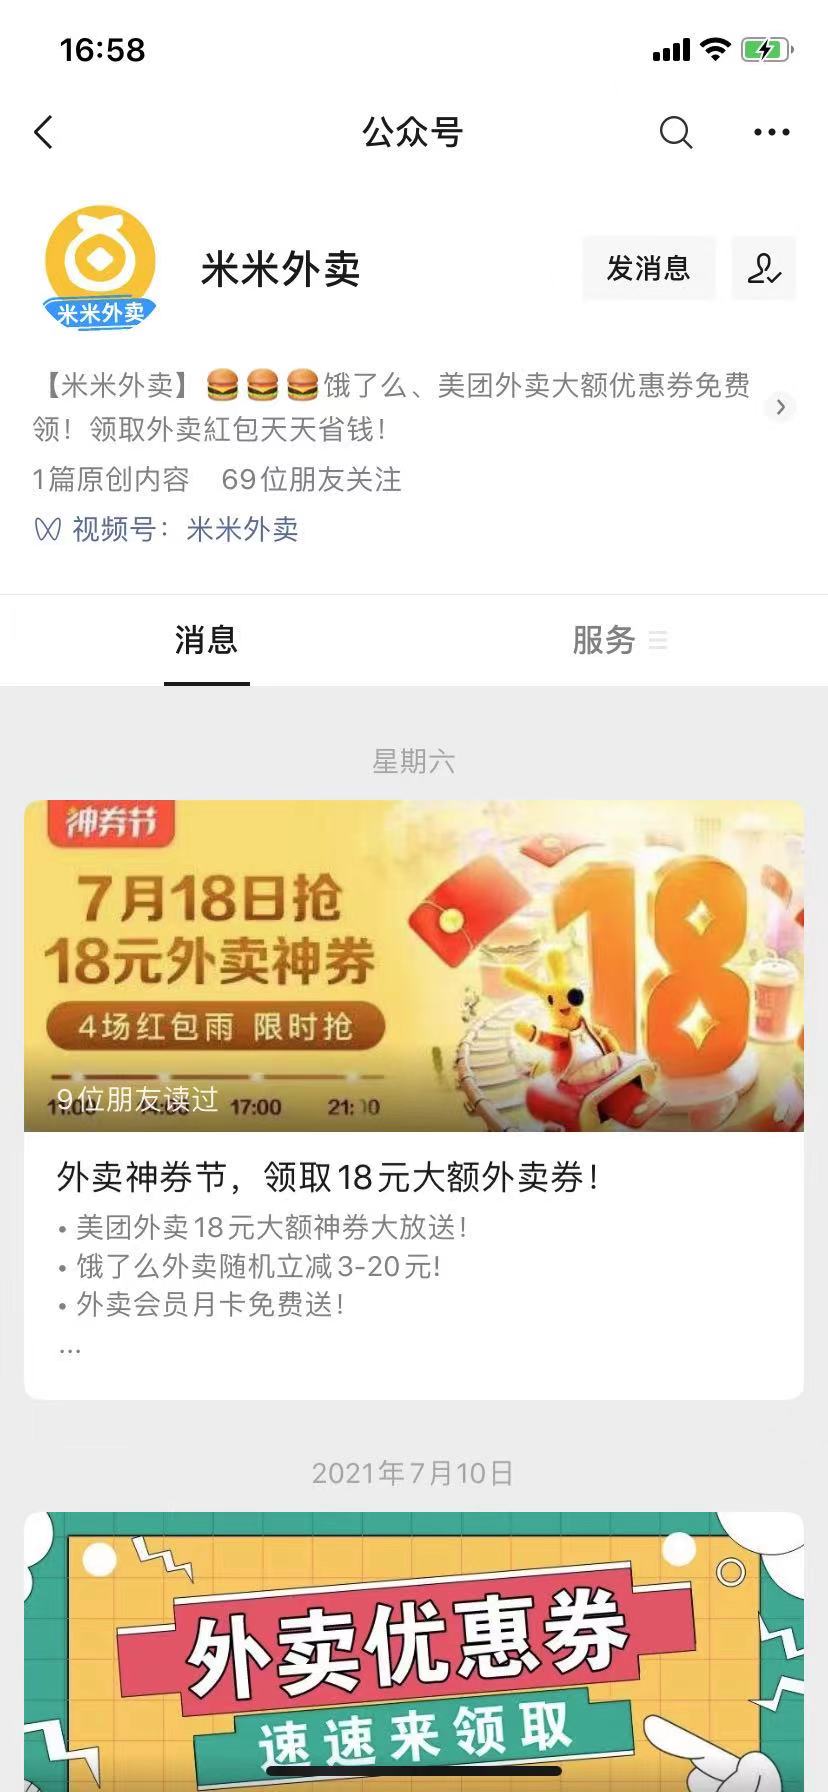 免费免费！赣榆惠民发布平台免费为商家发布广告！